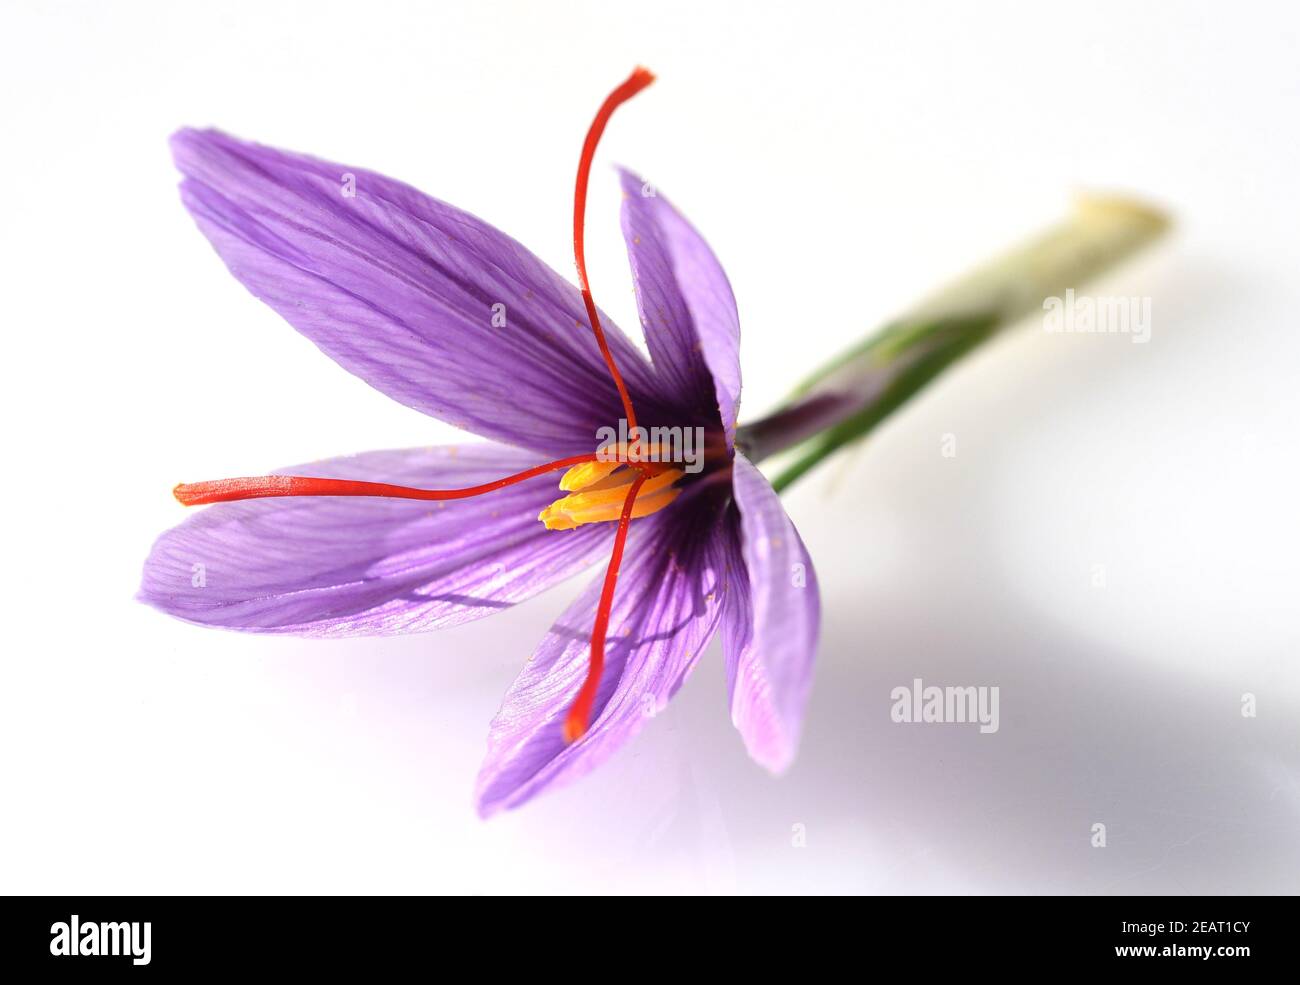 Safran, Crocus sativus, Heilpflanze Foto de stock